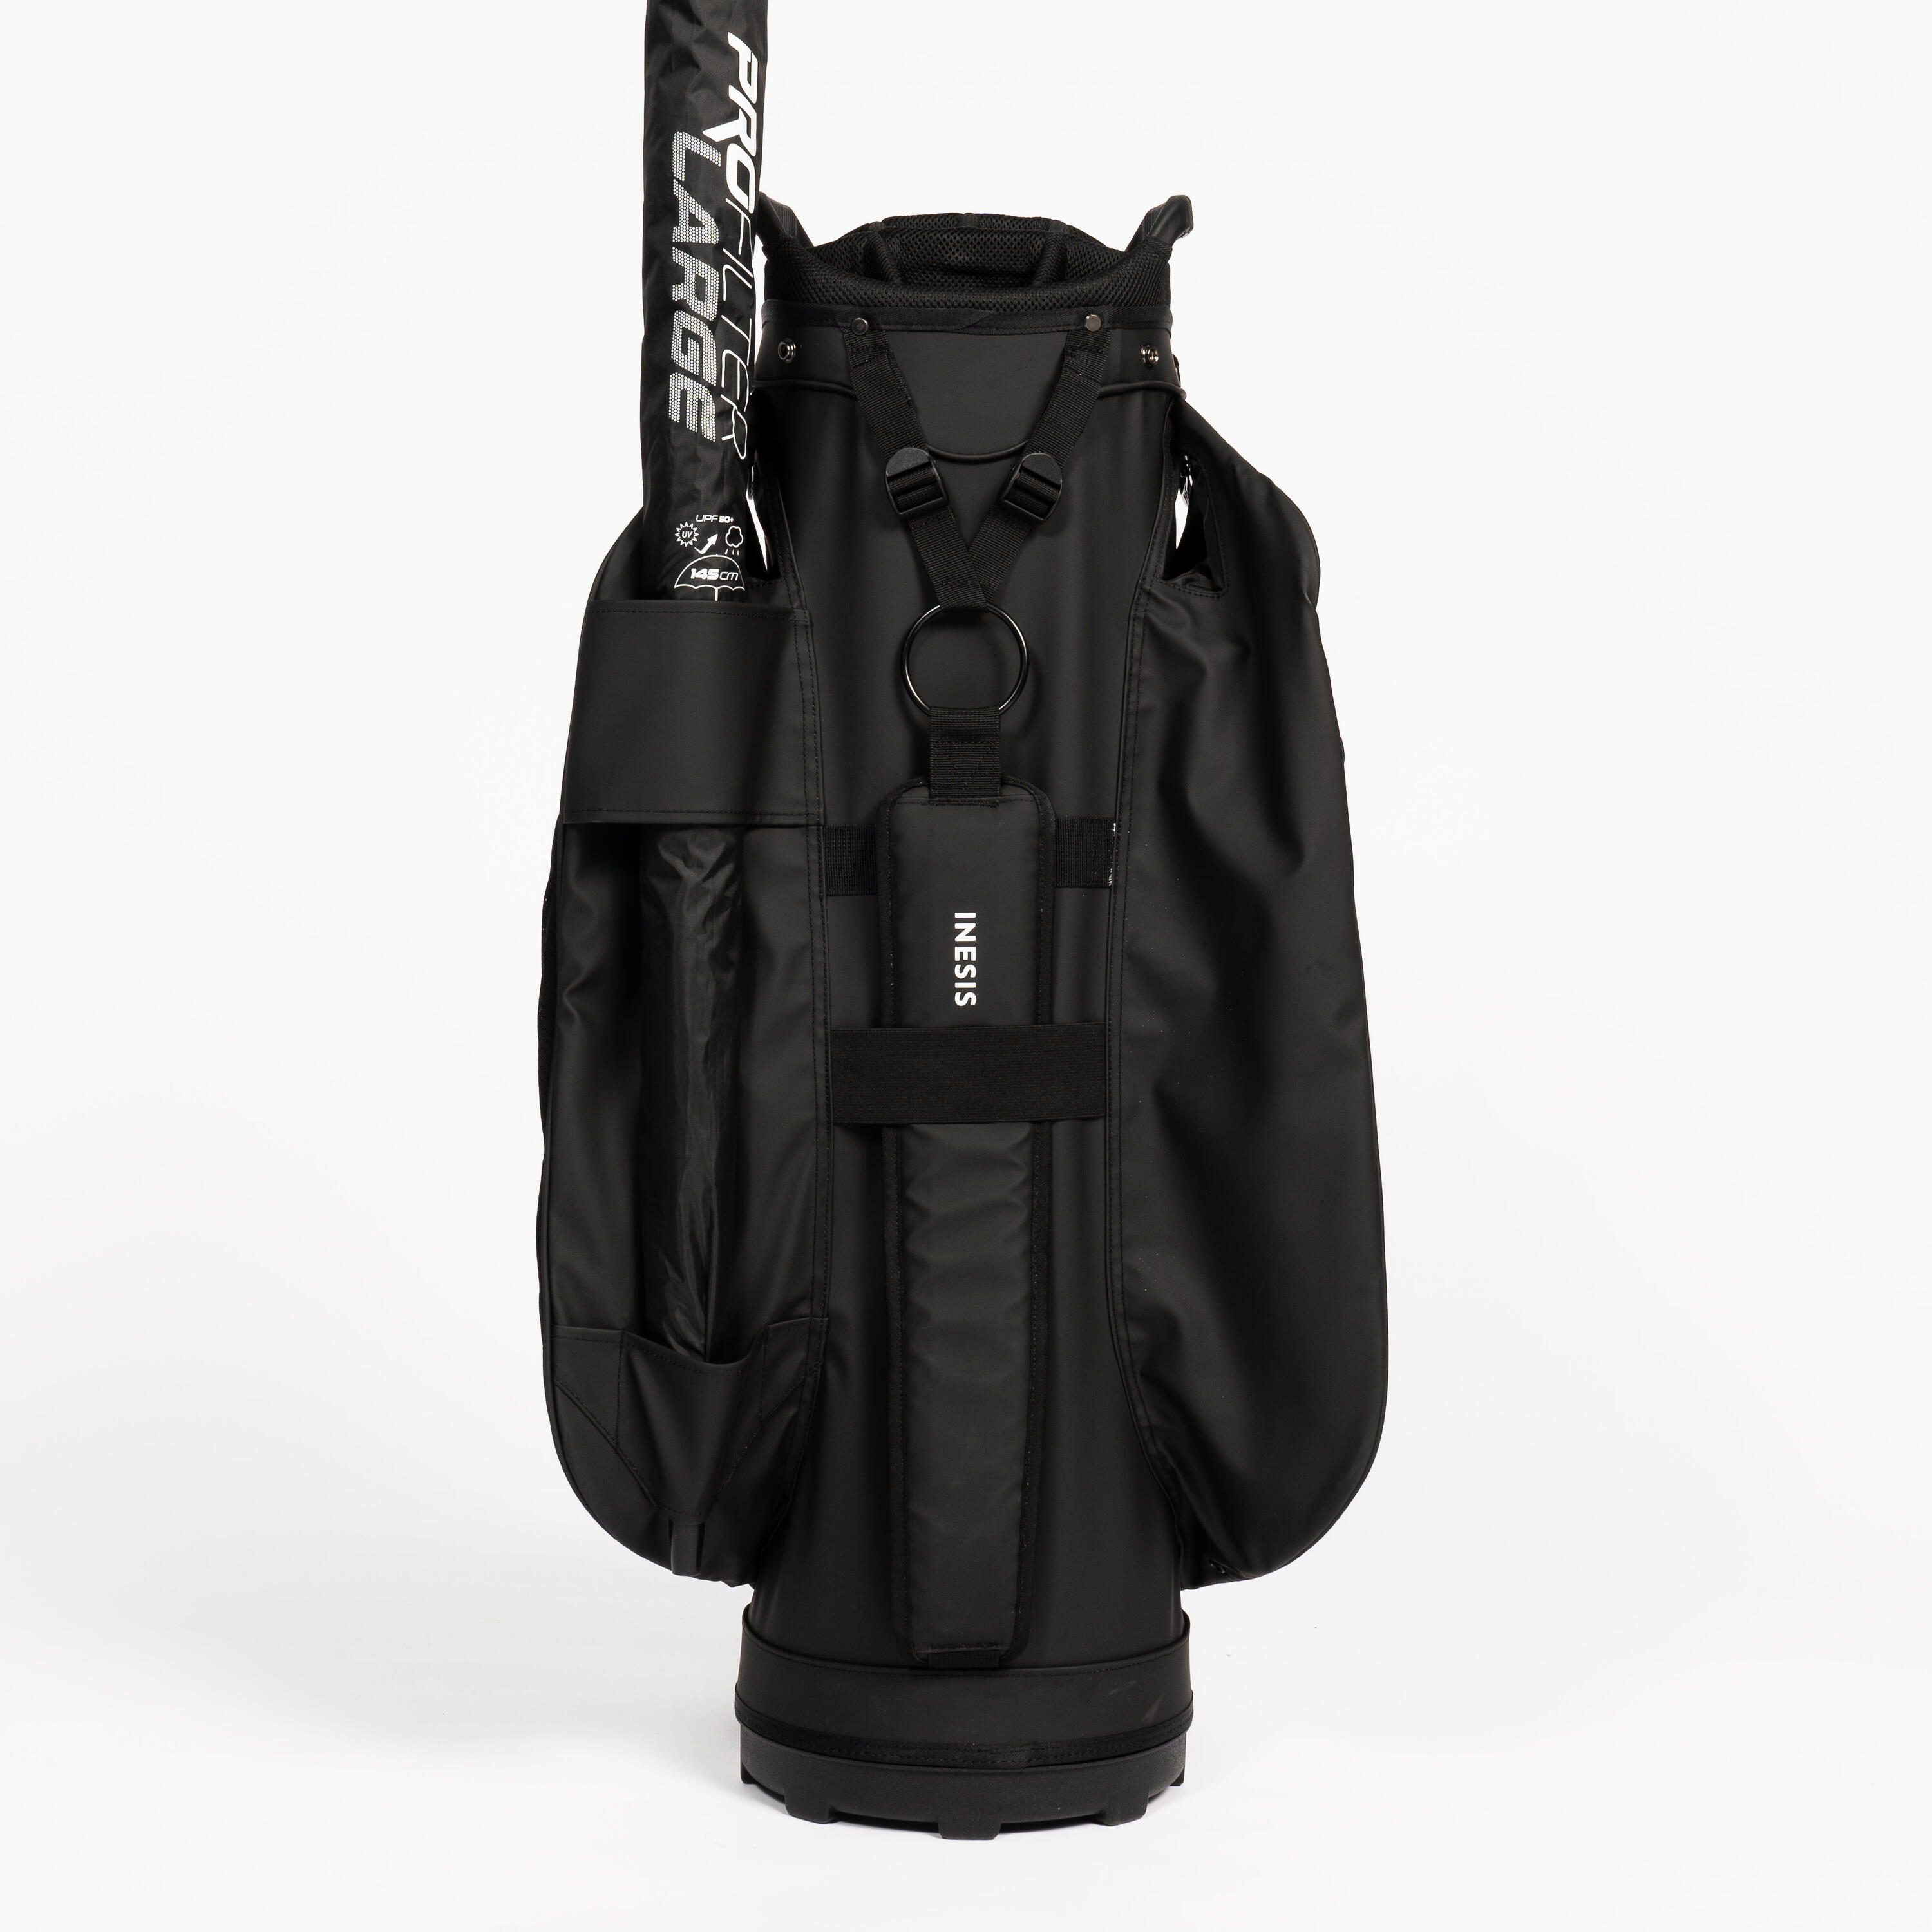 Golf trolley bag waterproof – INESIS cart black 11/12